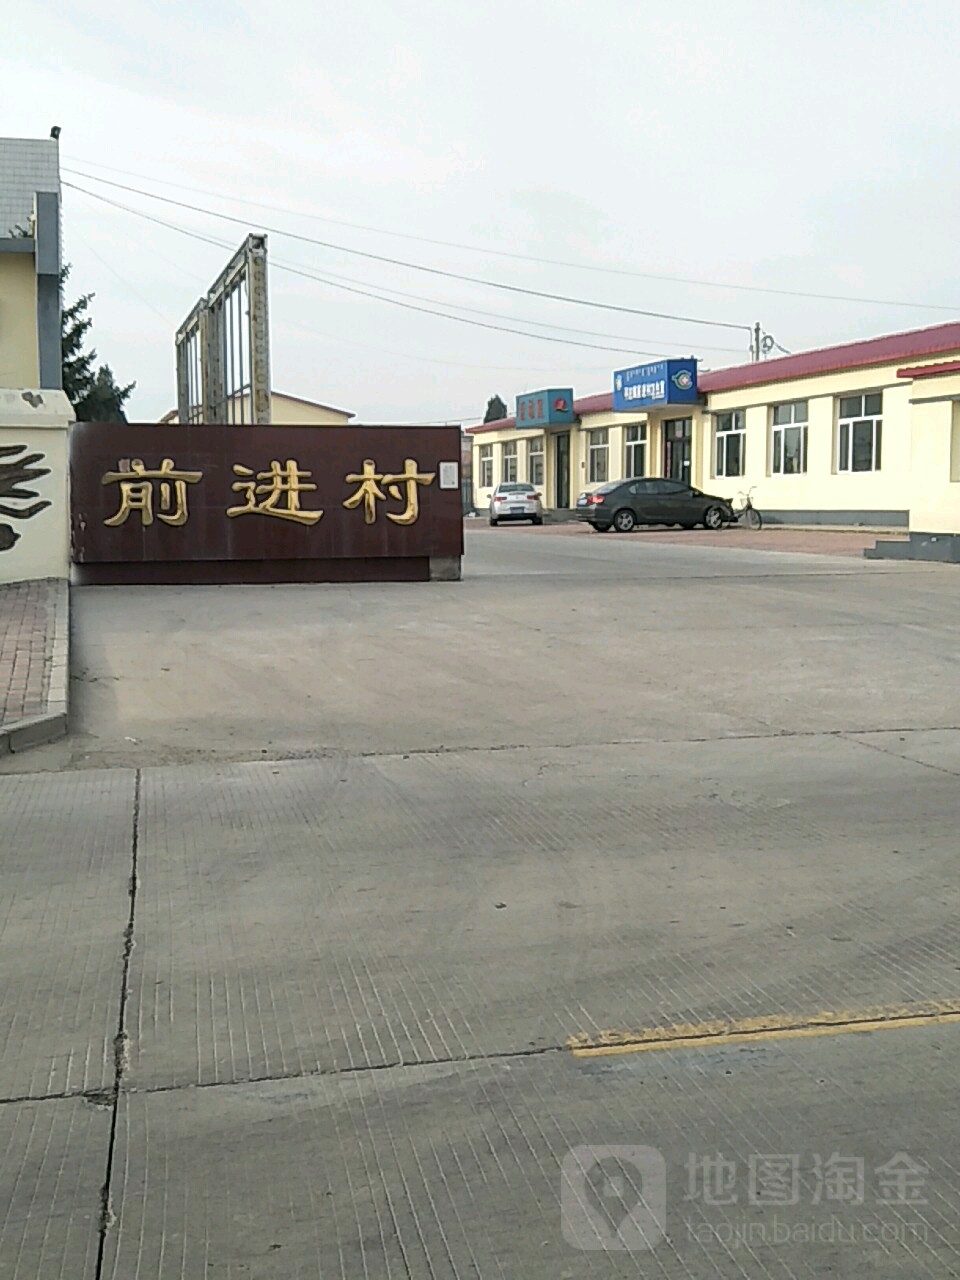 内蒙古自治区赤峰市元宝山区平庄镇前进平牛线诺贝尔幼儿园东北